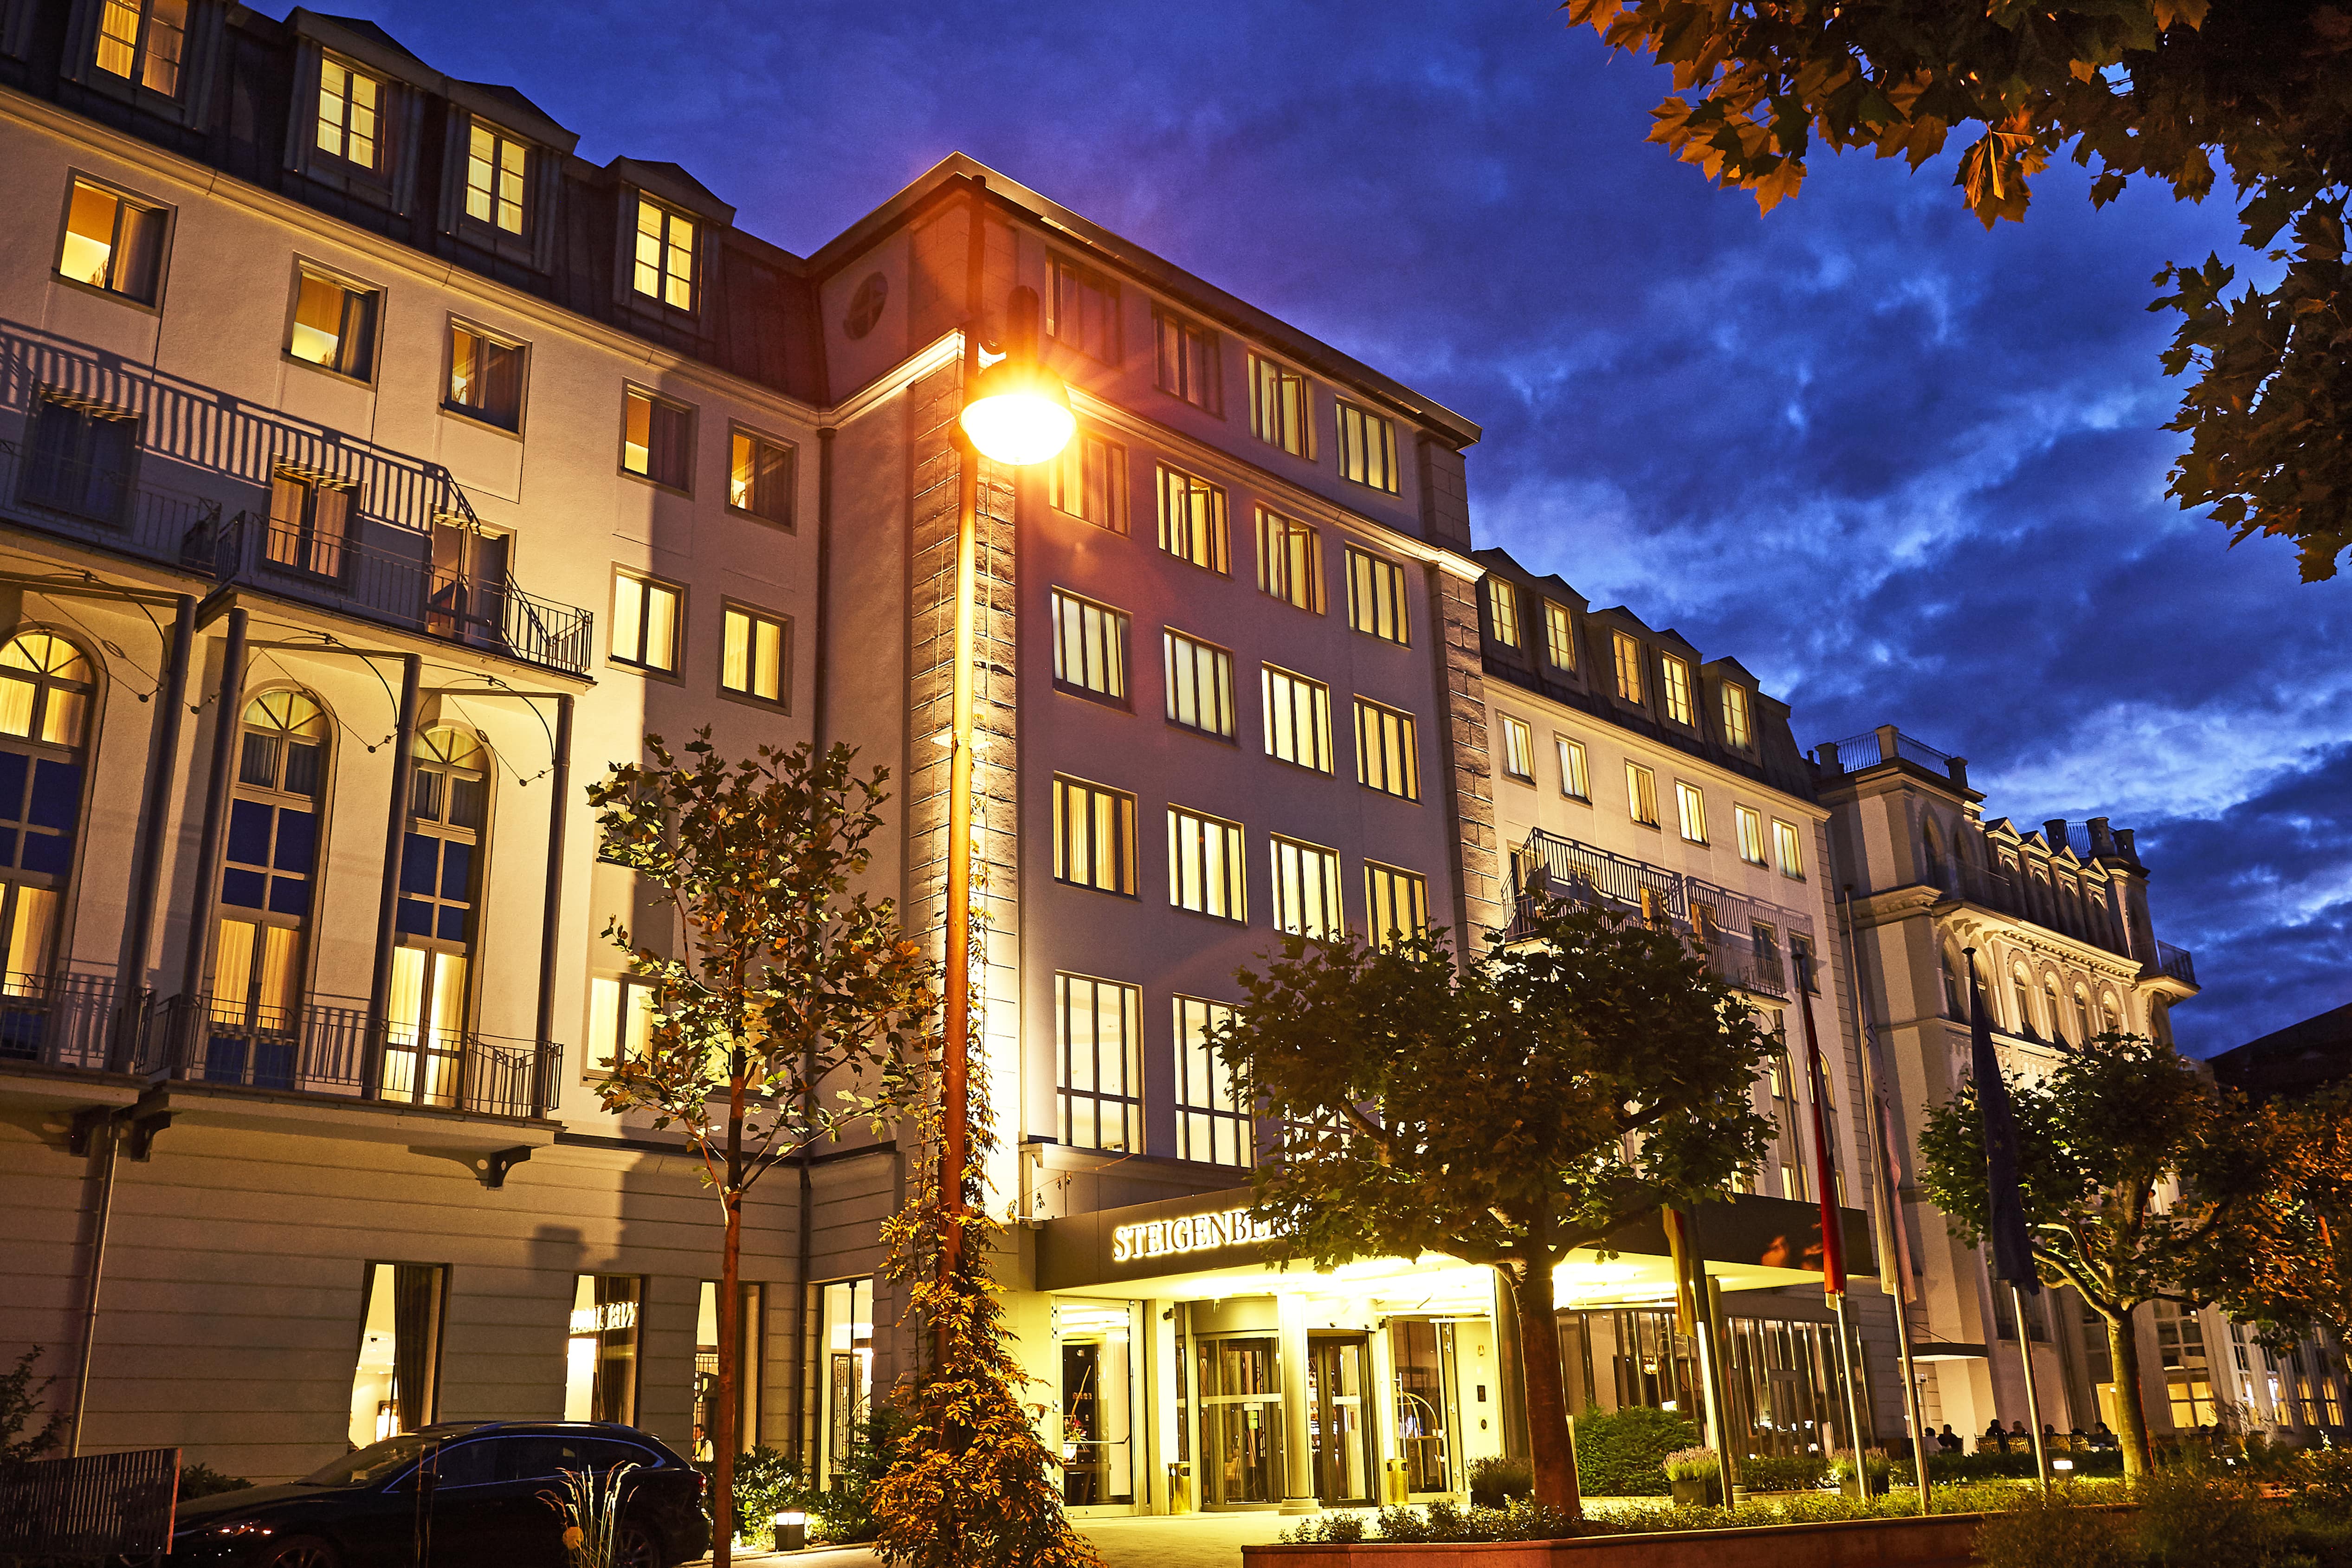 Steigenberger Hotel Bad Homburg Impression